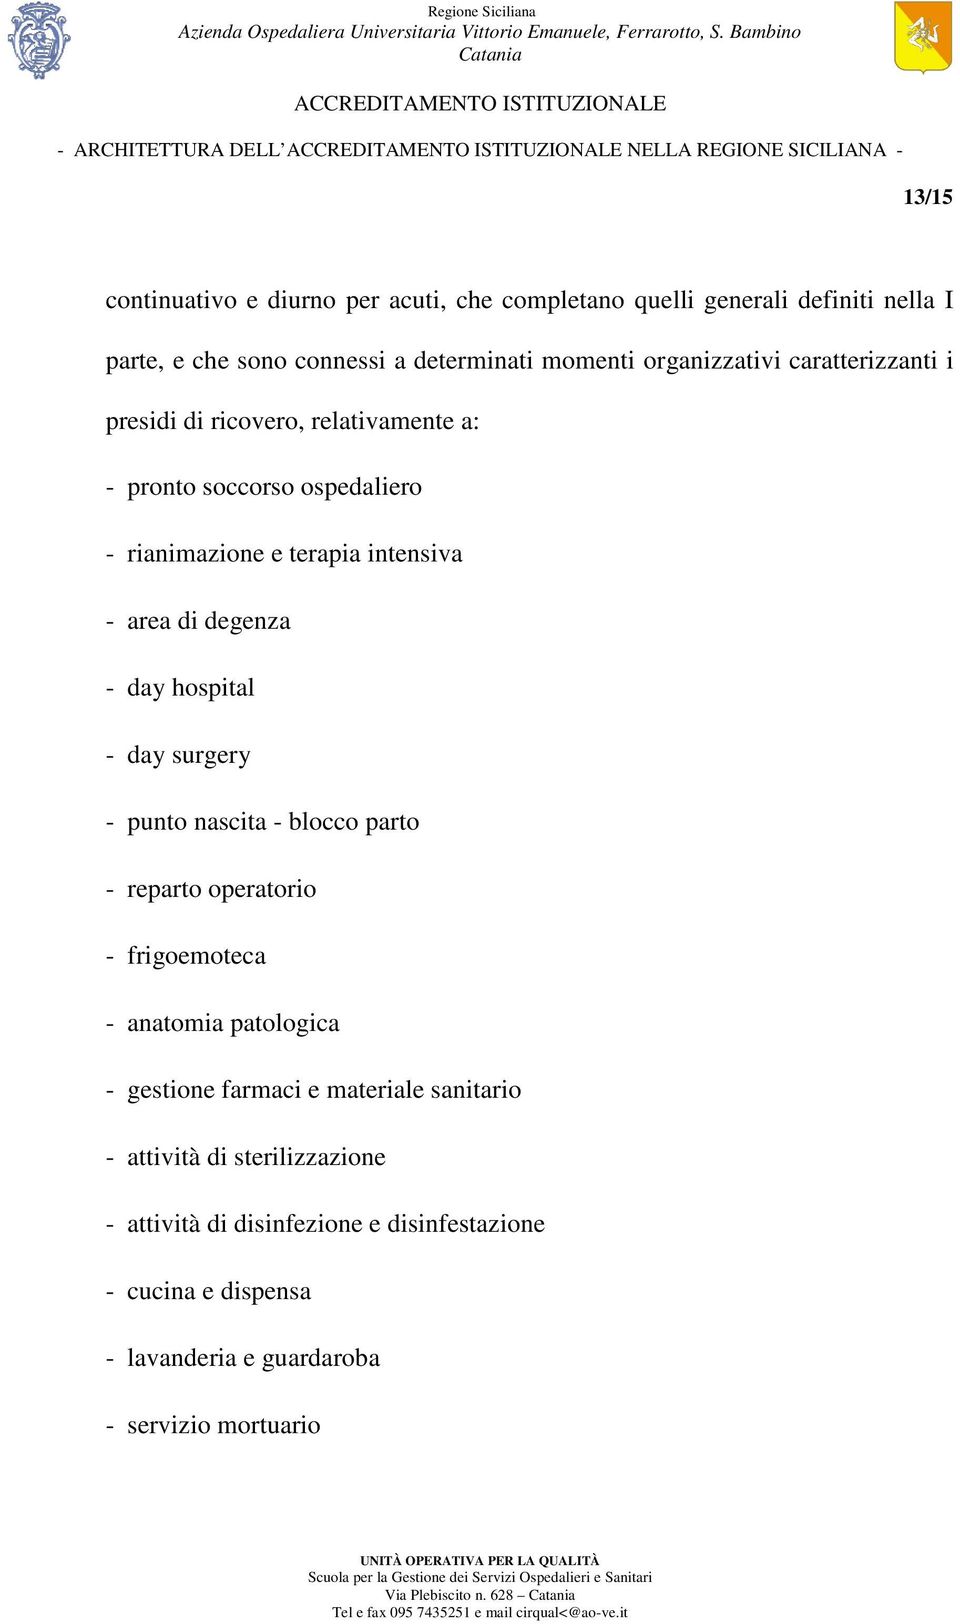 intensiva - area di degenza - day hospital - day surgery - punto nascita - blocco parto - reparto operatorio - frigoemoteca - anatomia patologica - gestione